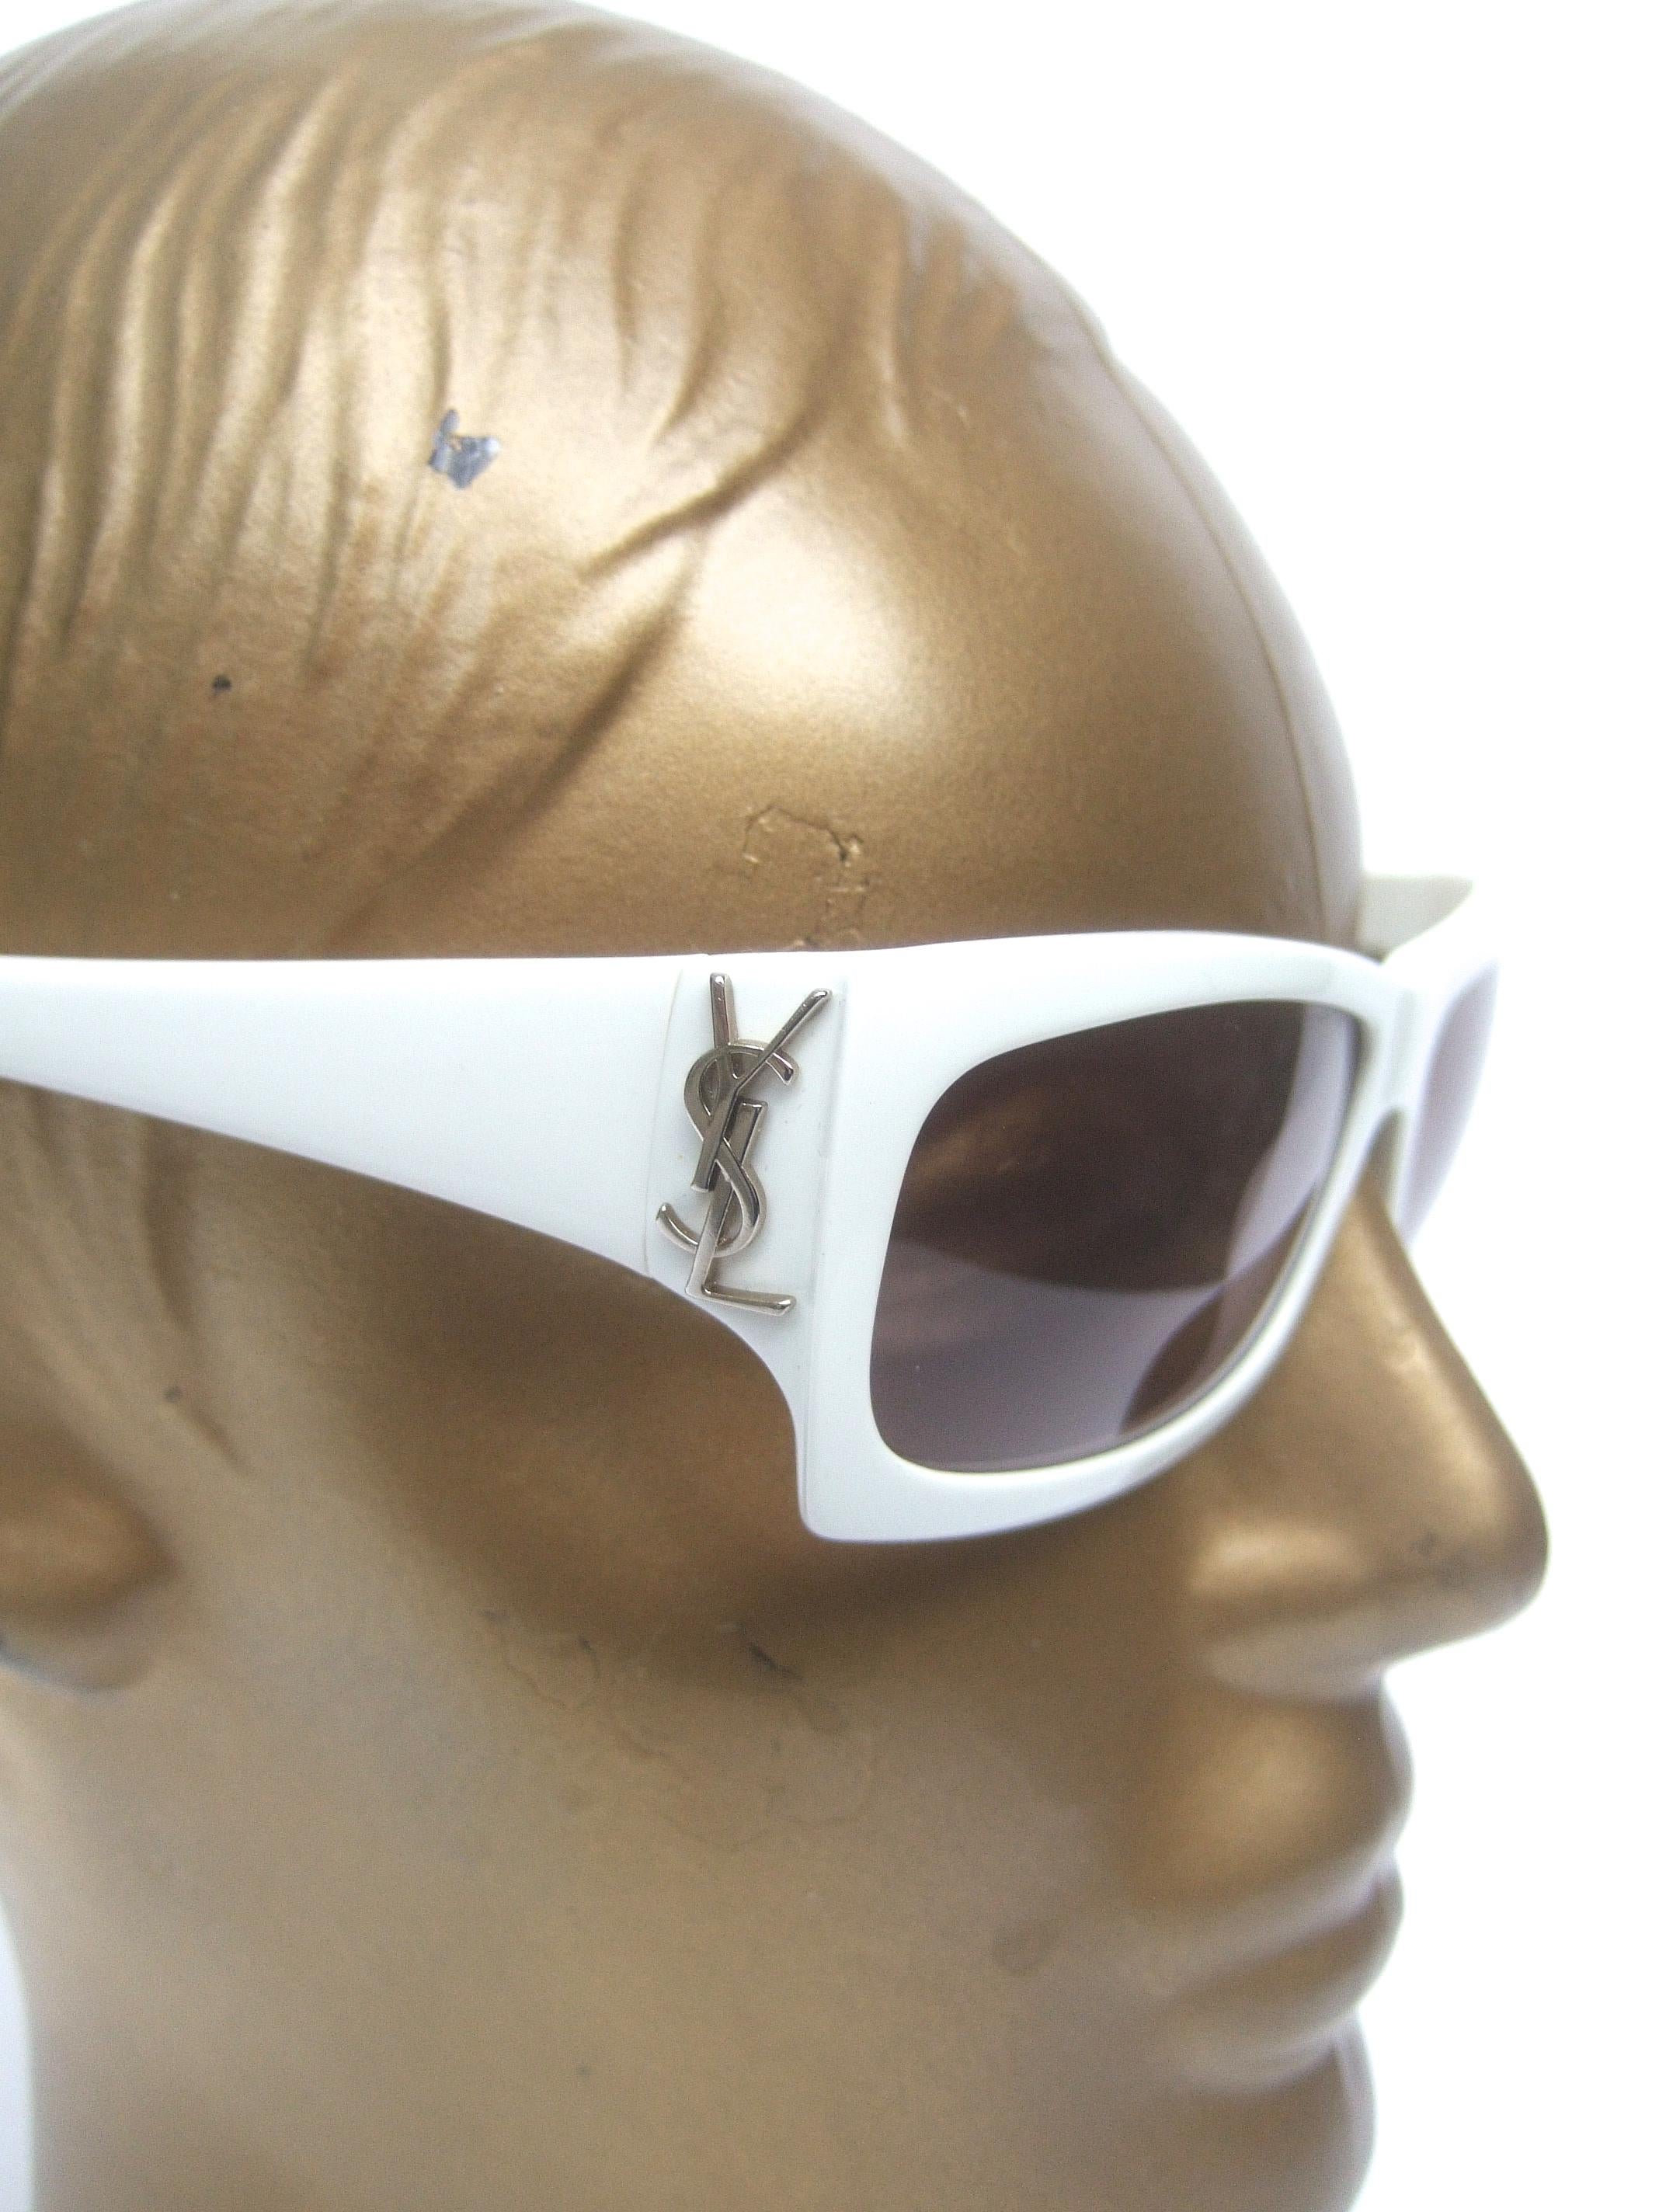 Yves Saint Laurent Italian White Plastic Frame Sunglasses in YSL Case c 1990s 8